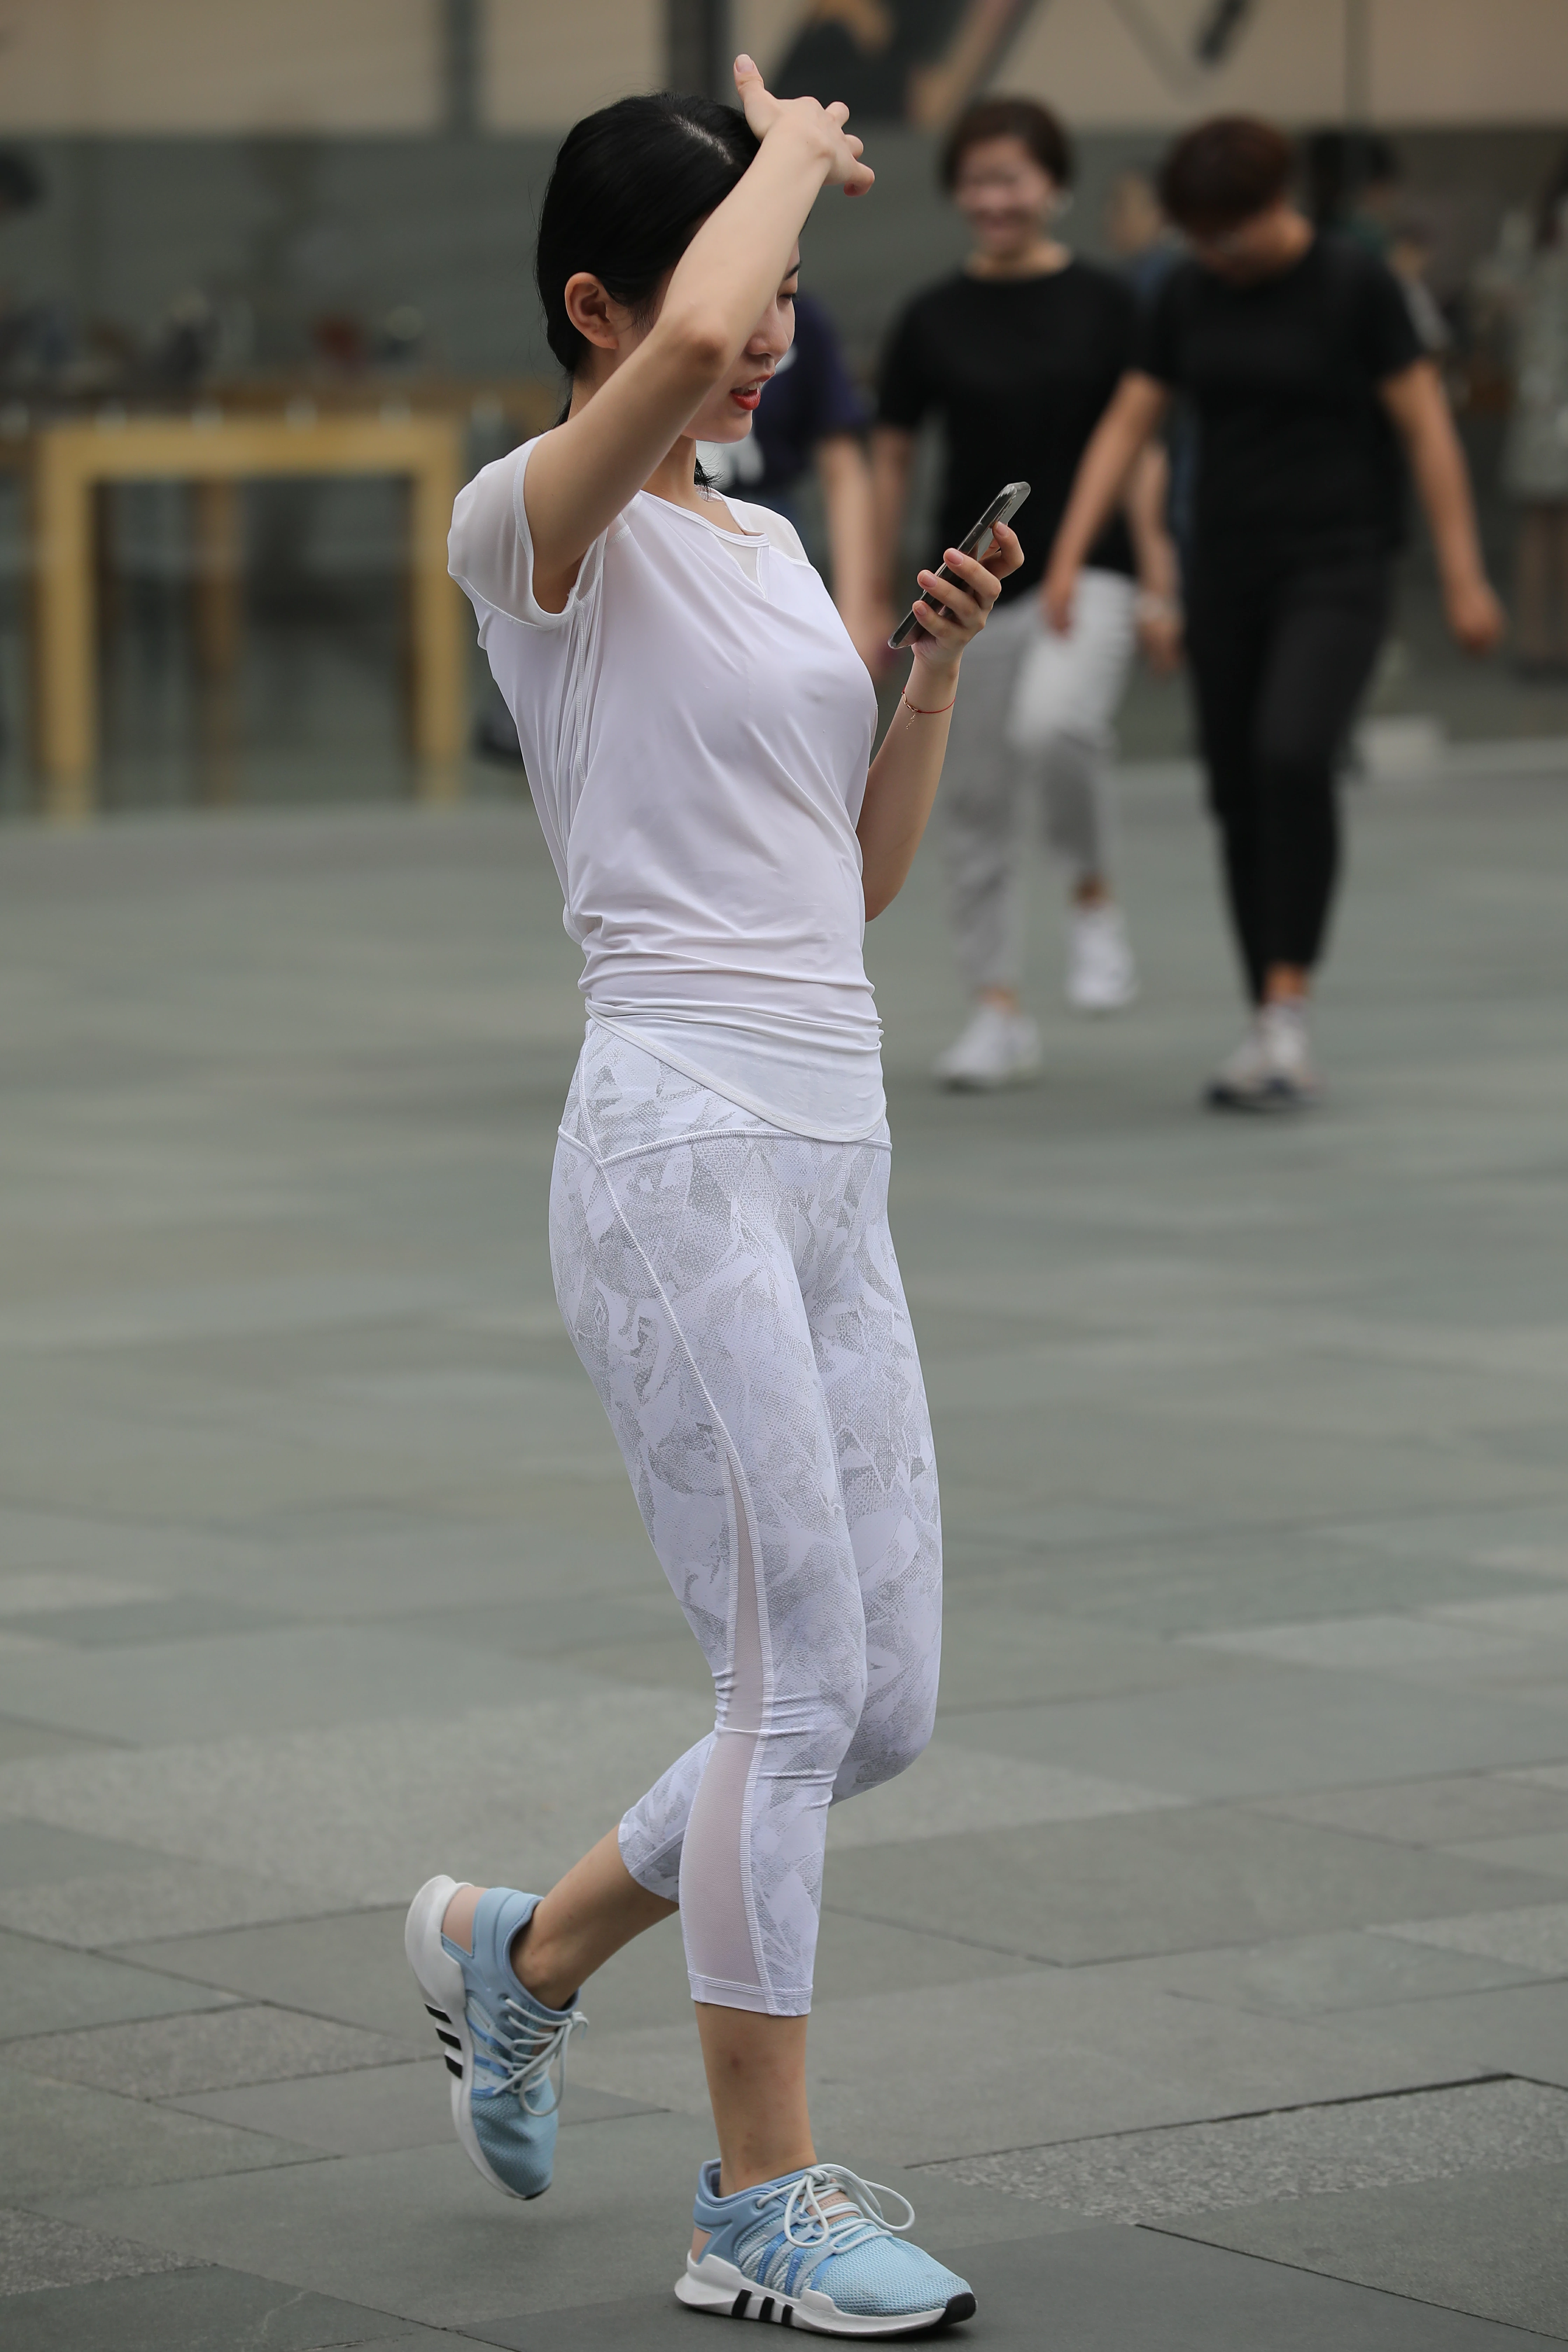 低头玩手机的性感美女白色透视短袖加白色蕾丝紧身裤,